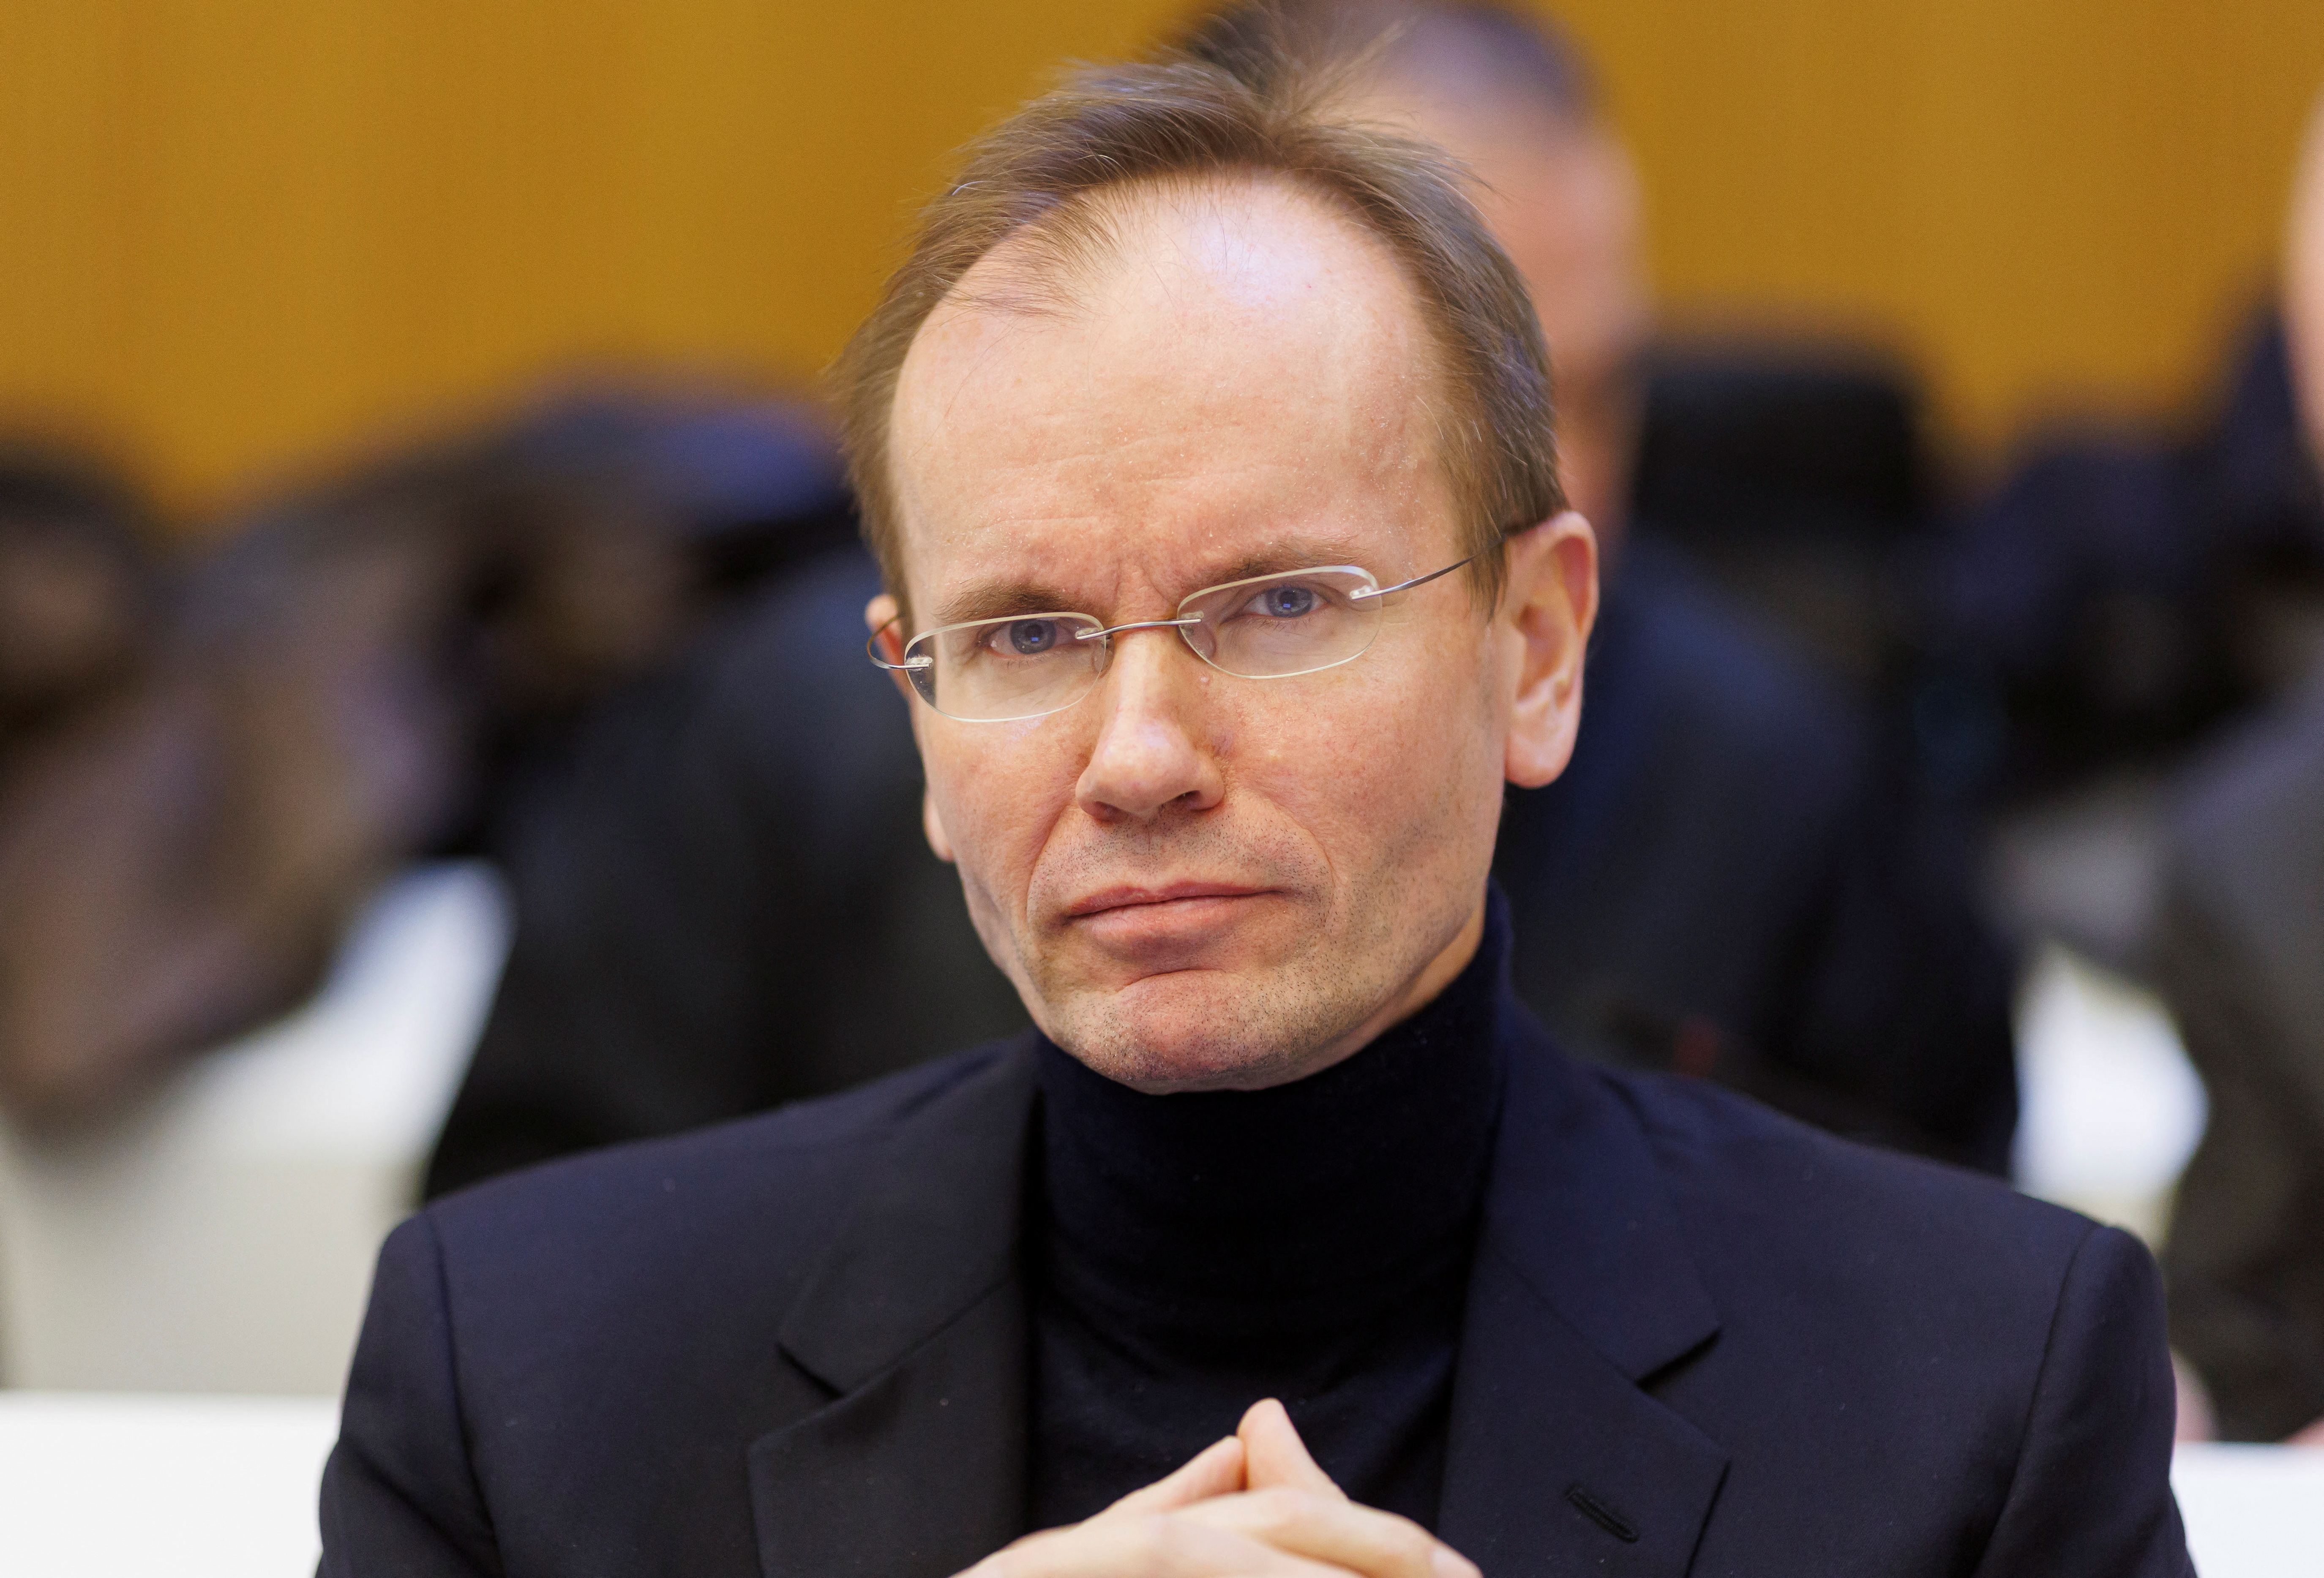 Former Wirecard CEO Braun attends trial in Munich